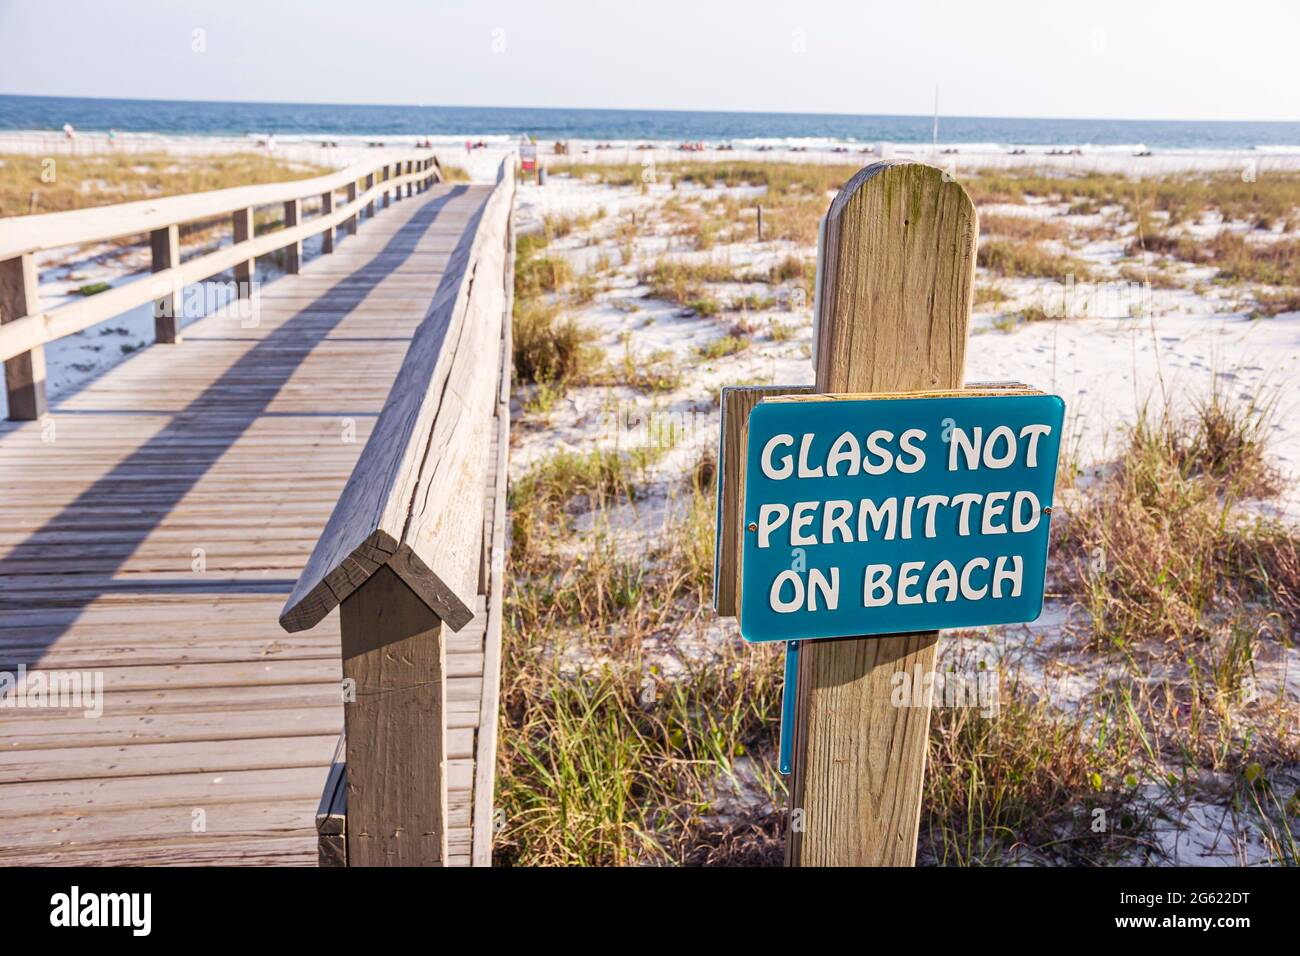 Alabama Orange Beach Island House Hotel Promenade, öffentliche Strand Schild Glas nicht erlaubt Sanddünen Golf von Mexiko, Stockfoto